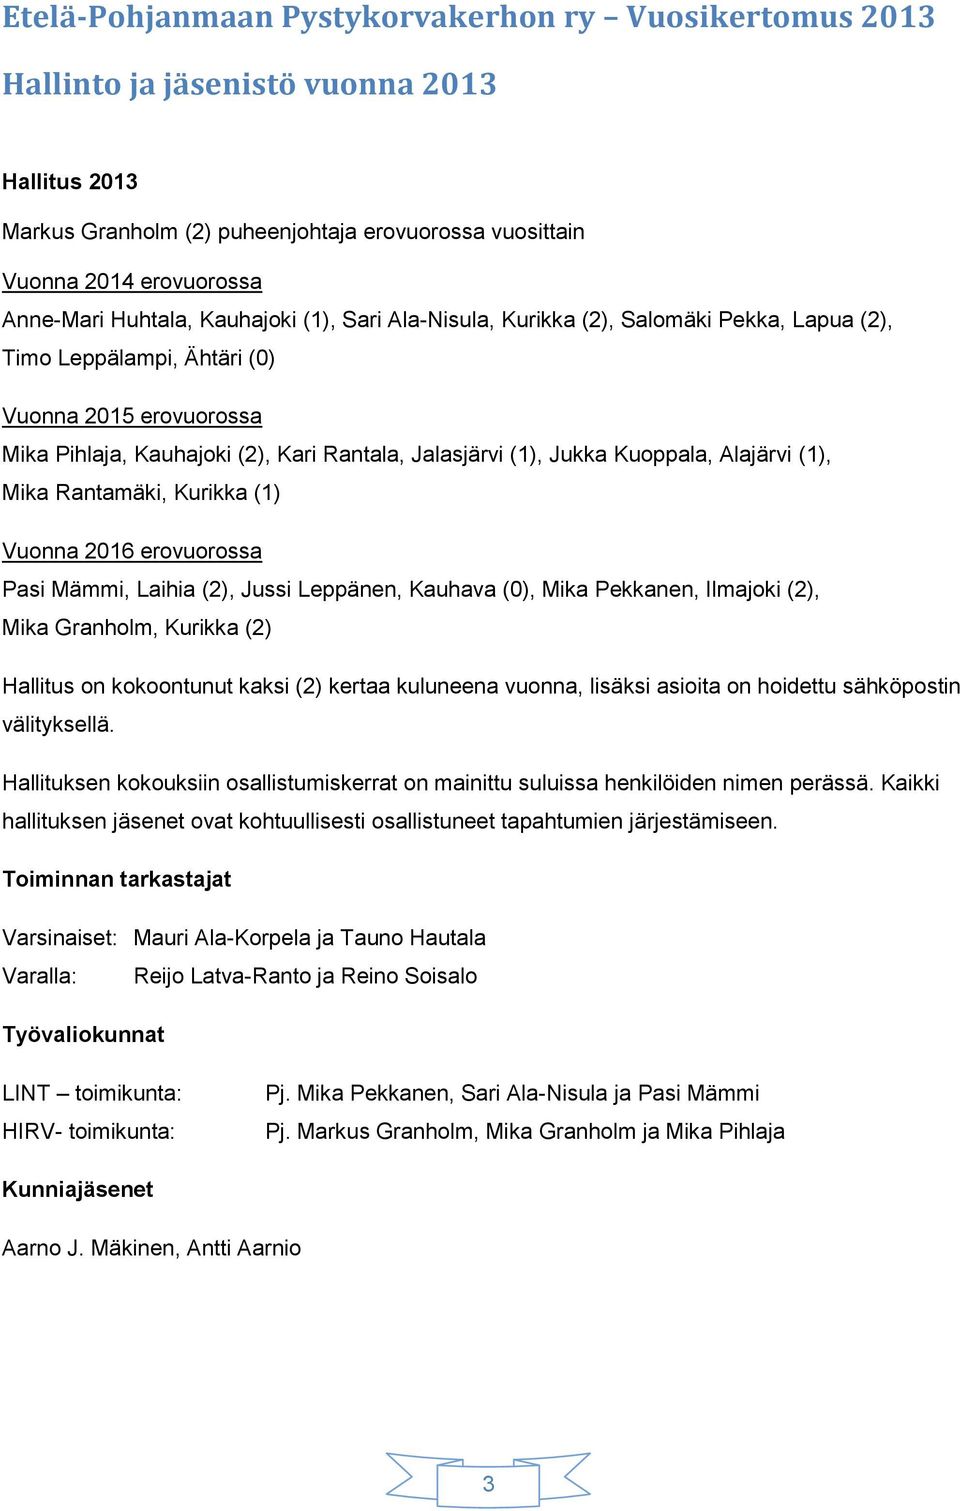 Kuoppala, Alajärvi (1), Mika Rantamäki, Kurikka (1) Vuonna 2016 erovuorossa Pasi Mämmi, Laihia (2), Jussi Leppänen, Kauhava (0), Mika Pekkanen, Ilmajoki (2), Mika Granholm, Kurikka (2) Hallitus on